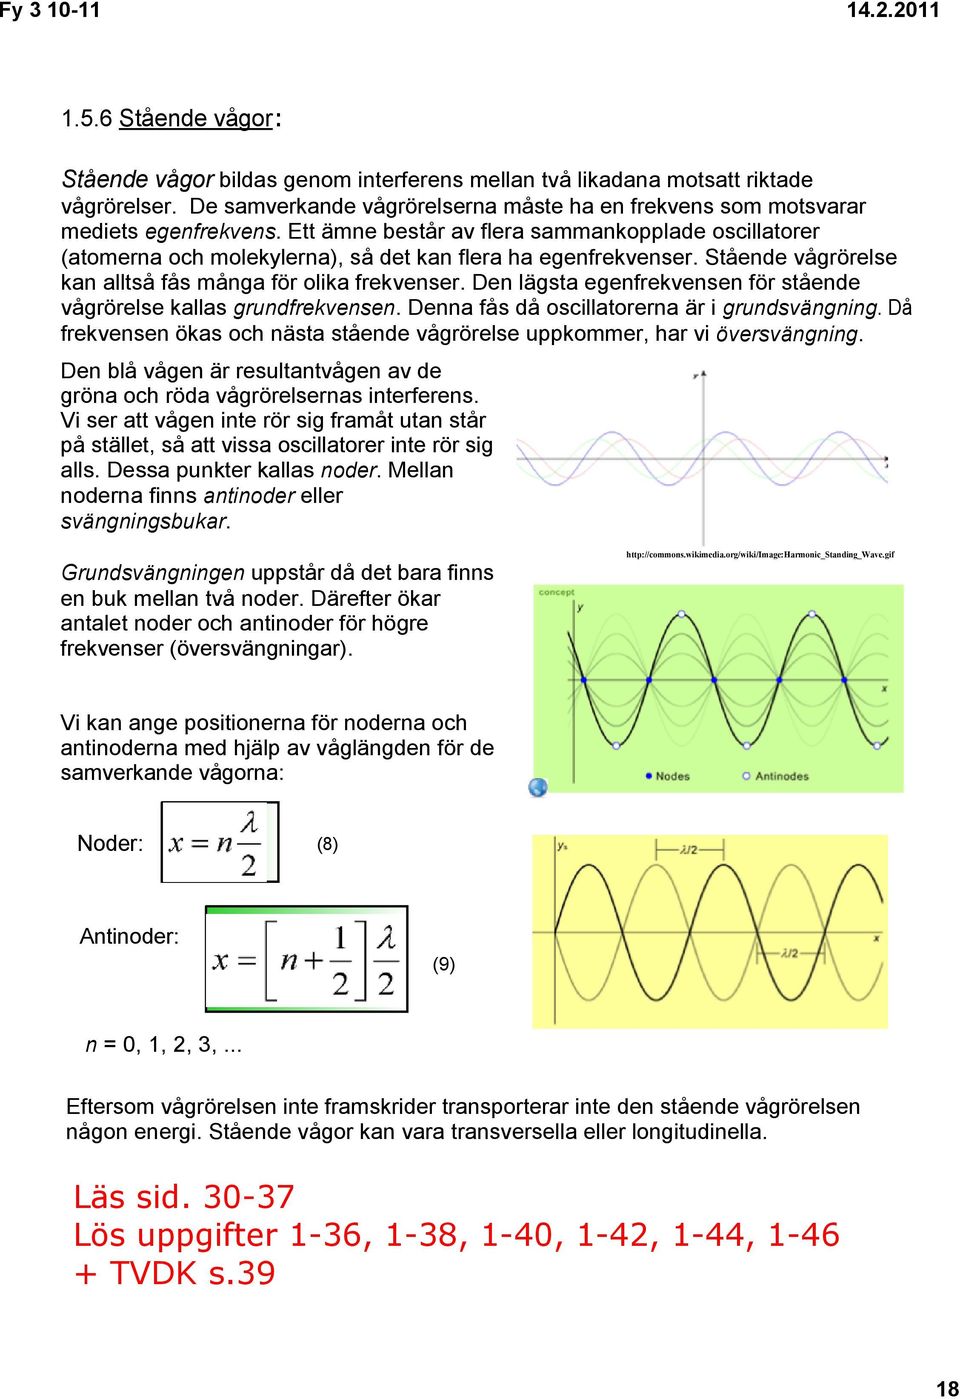 Den lägsta egenfrekvensen för stående vågrörelse kallas grundfrekvensen. Denna fås då oscillatorerna är i grundsvängning.